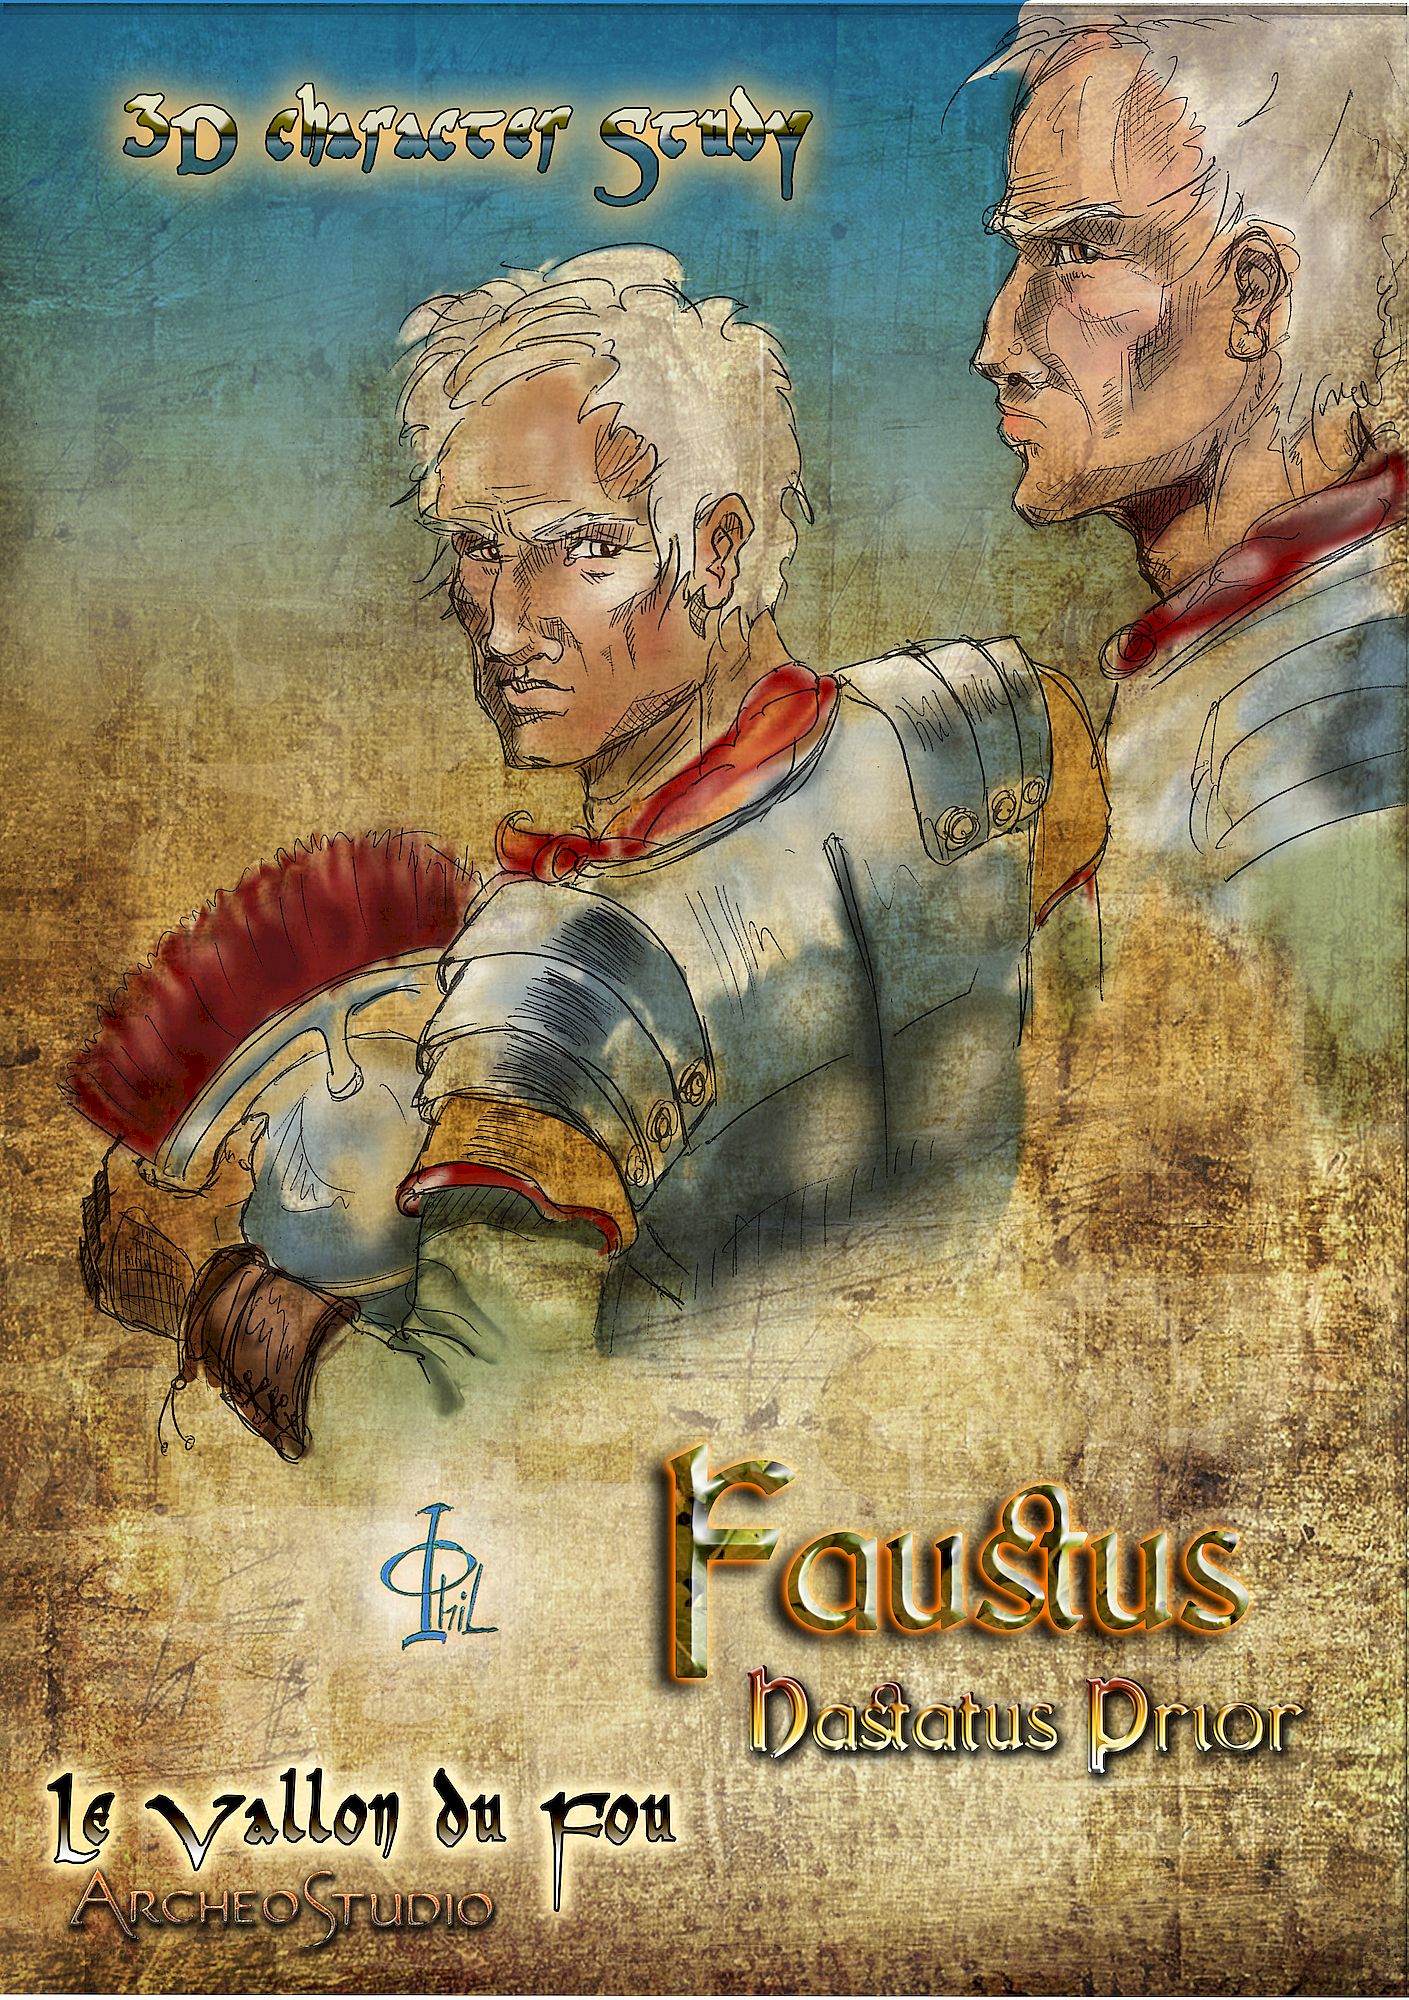 Faustus Hastatus Prior - Character Study